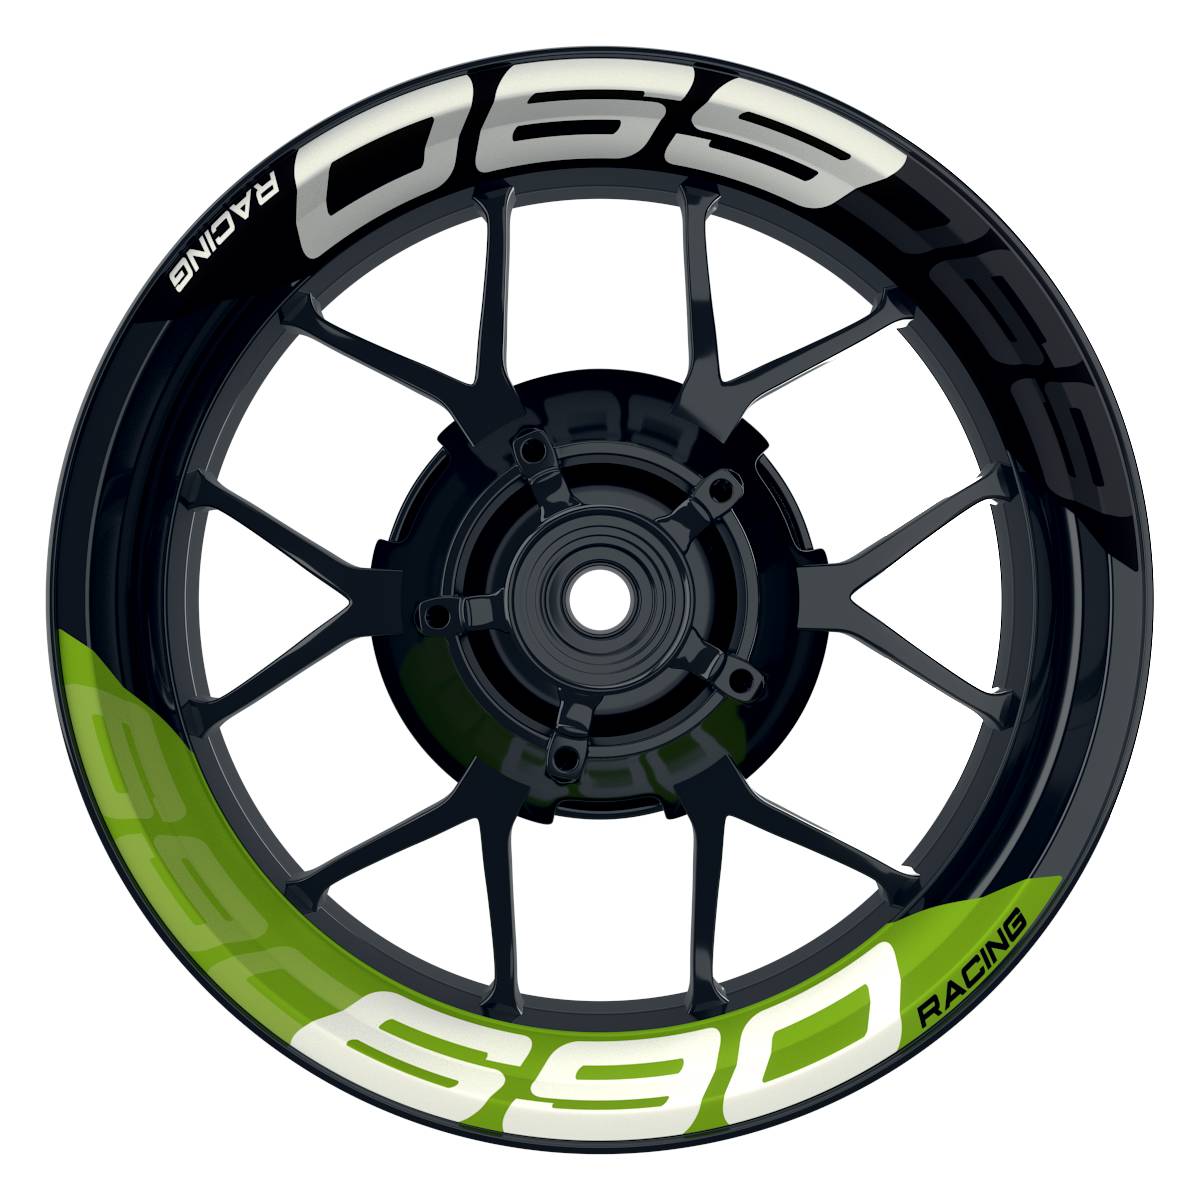 Wheelsticker Felgenaufkleber KTM Racing 690 halb halb V2 schwarz gruen Frontansicht